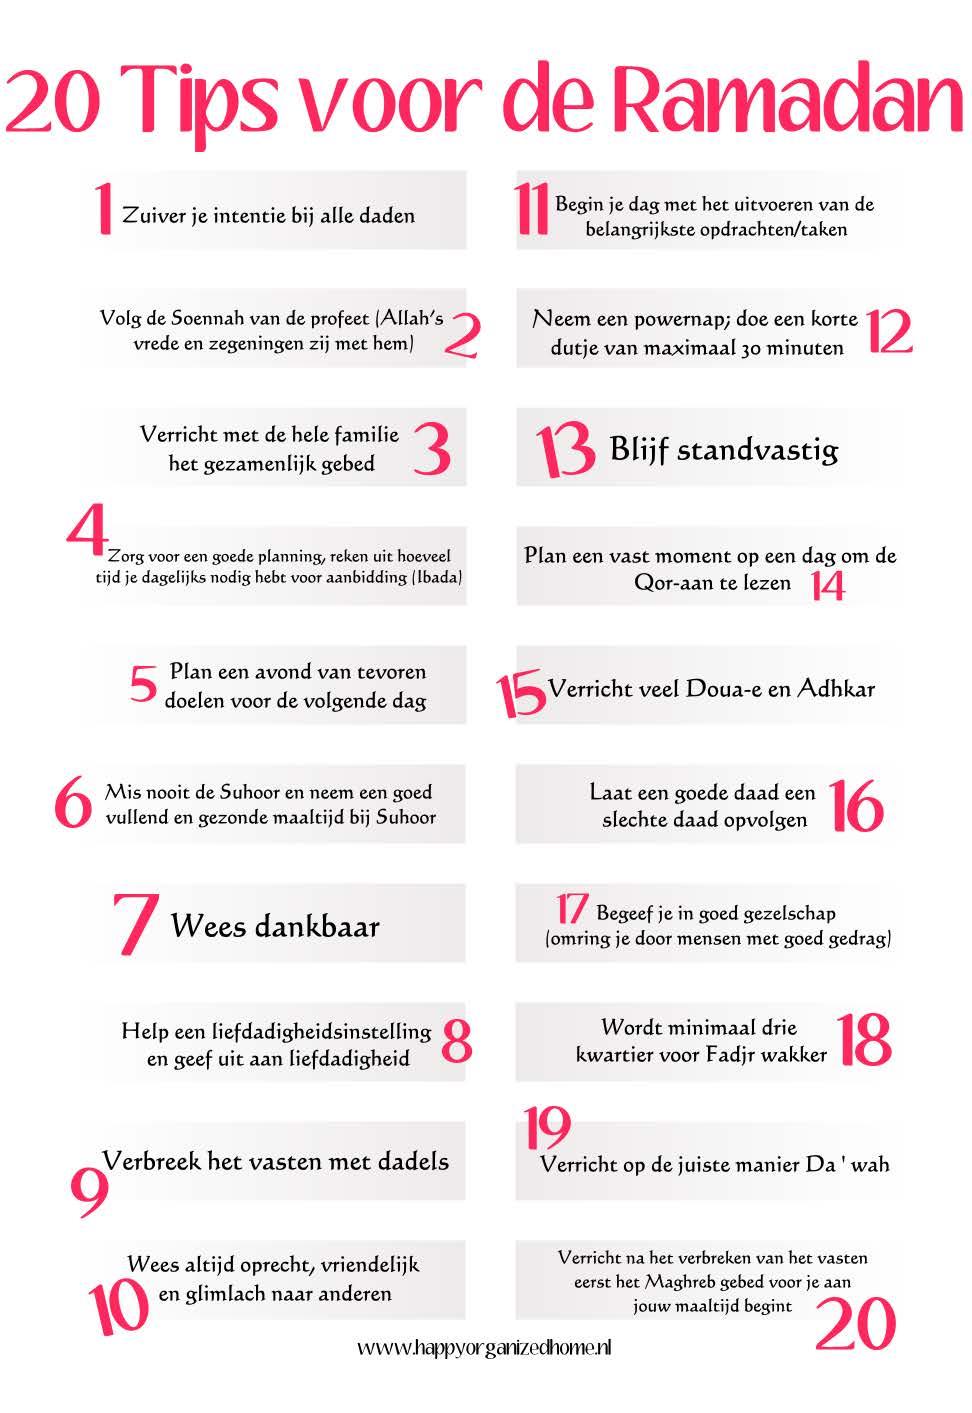 20 tips voor thuis! Op Pinterest.nl kunt u veel leuke ideeën vinden om op een creatieve manier aan het thema te werken.